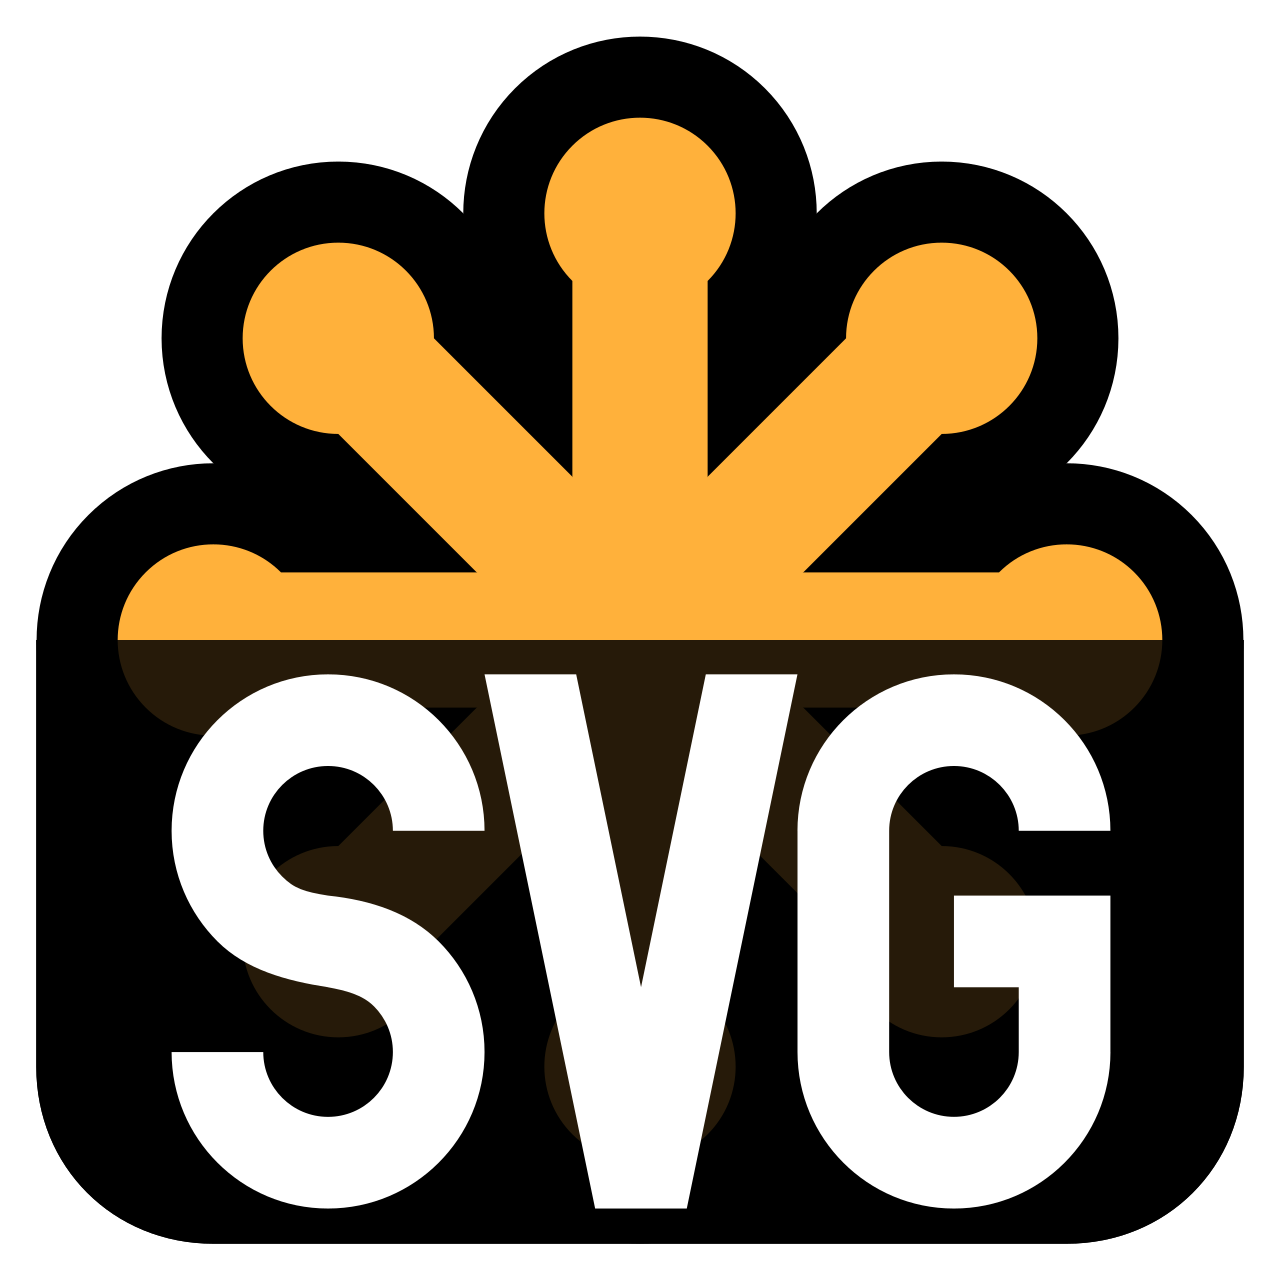 SVG - Scalable Vector Graphics - язык разметки масштабируемой векторной графики